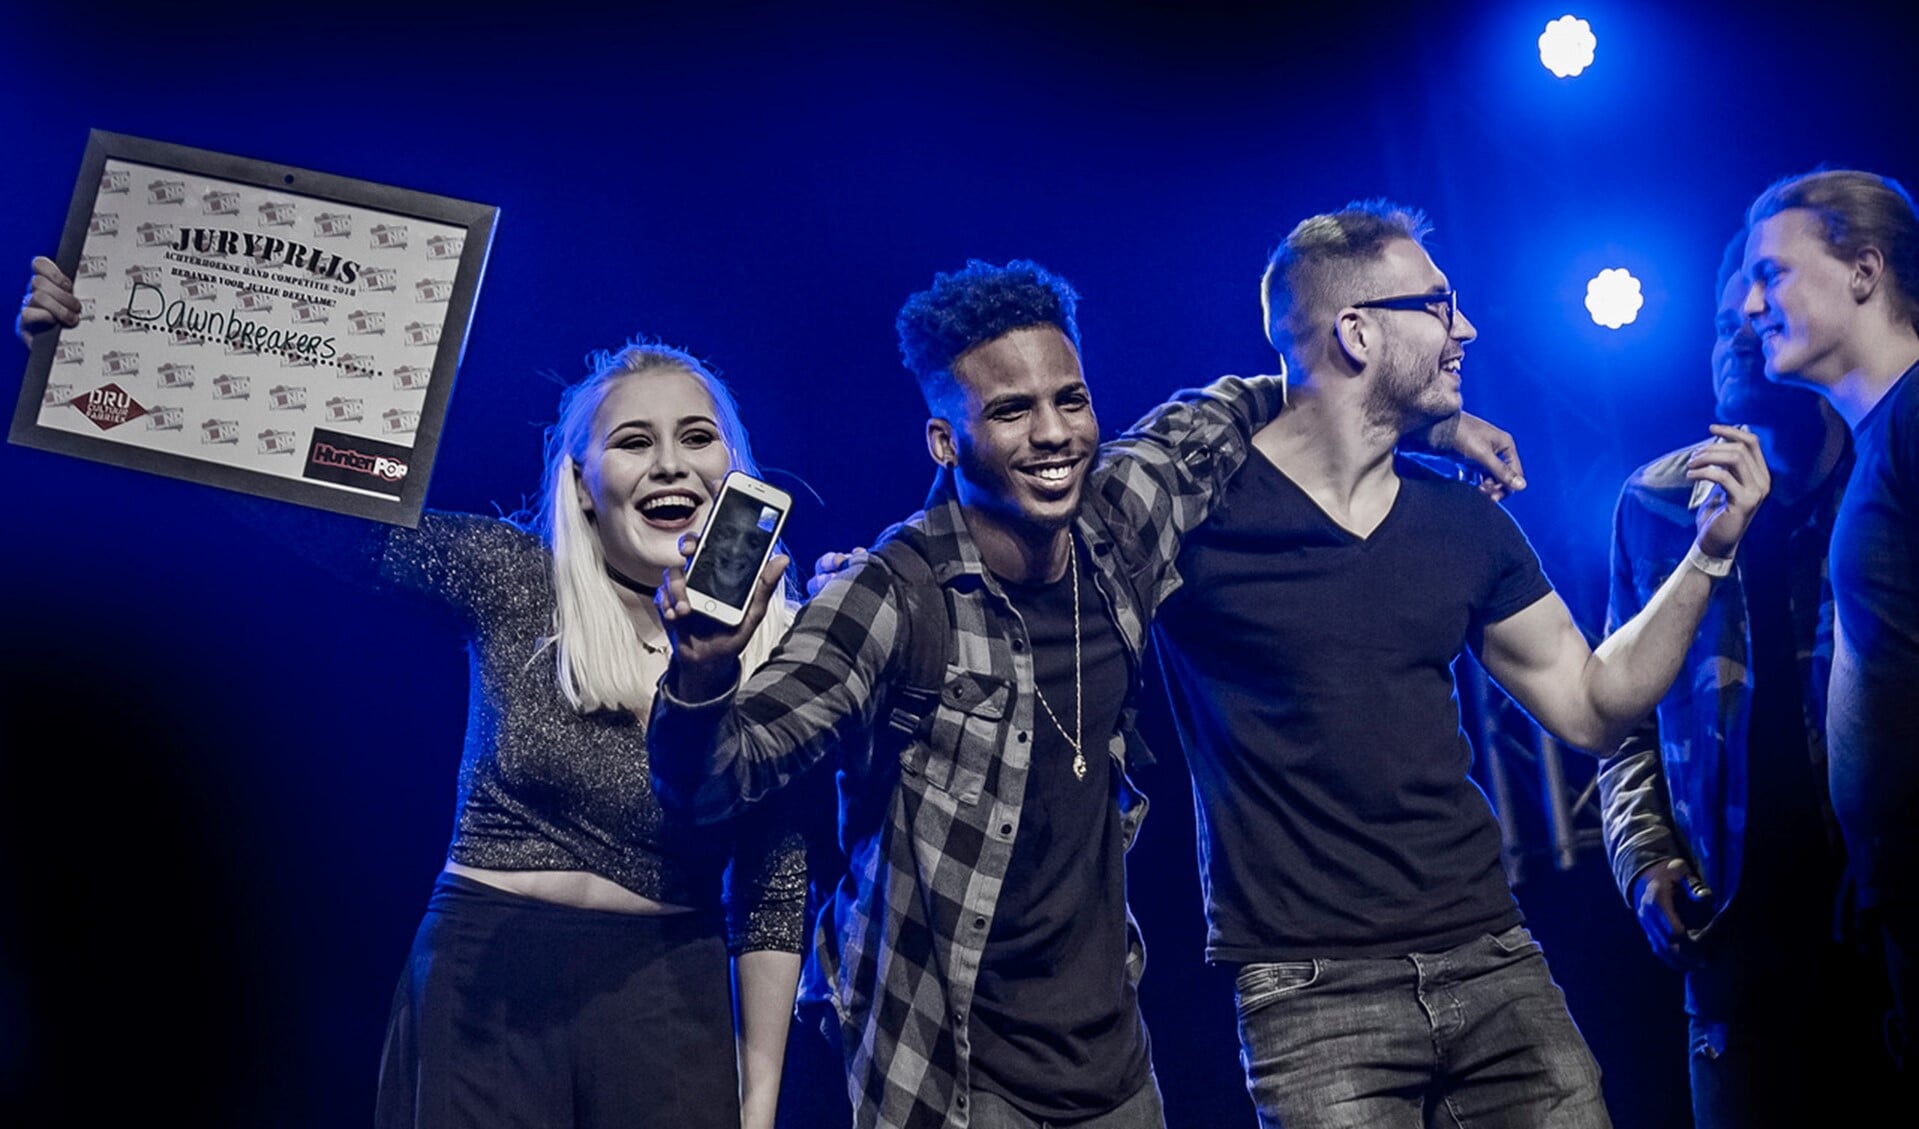 Dawnbreakers won de juryprijs tijdens de Achterhoekse Band Competitie. Foto: Edwin Hunter